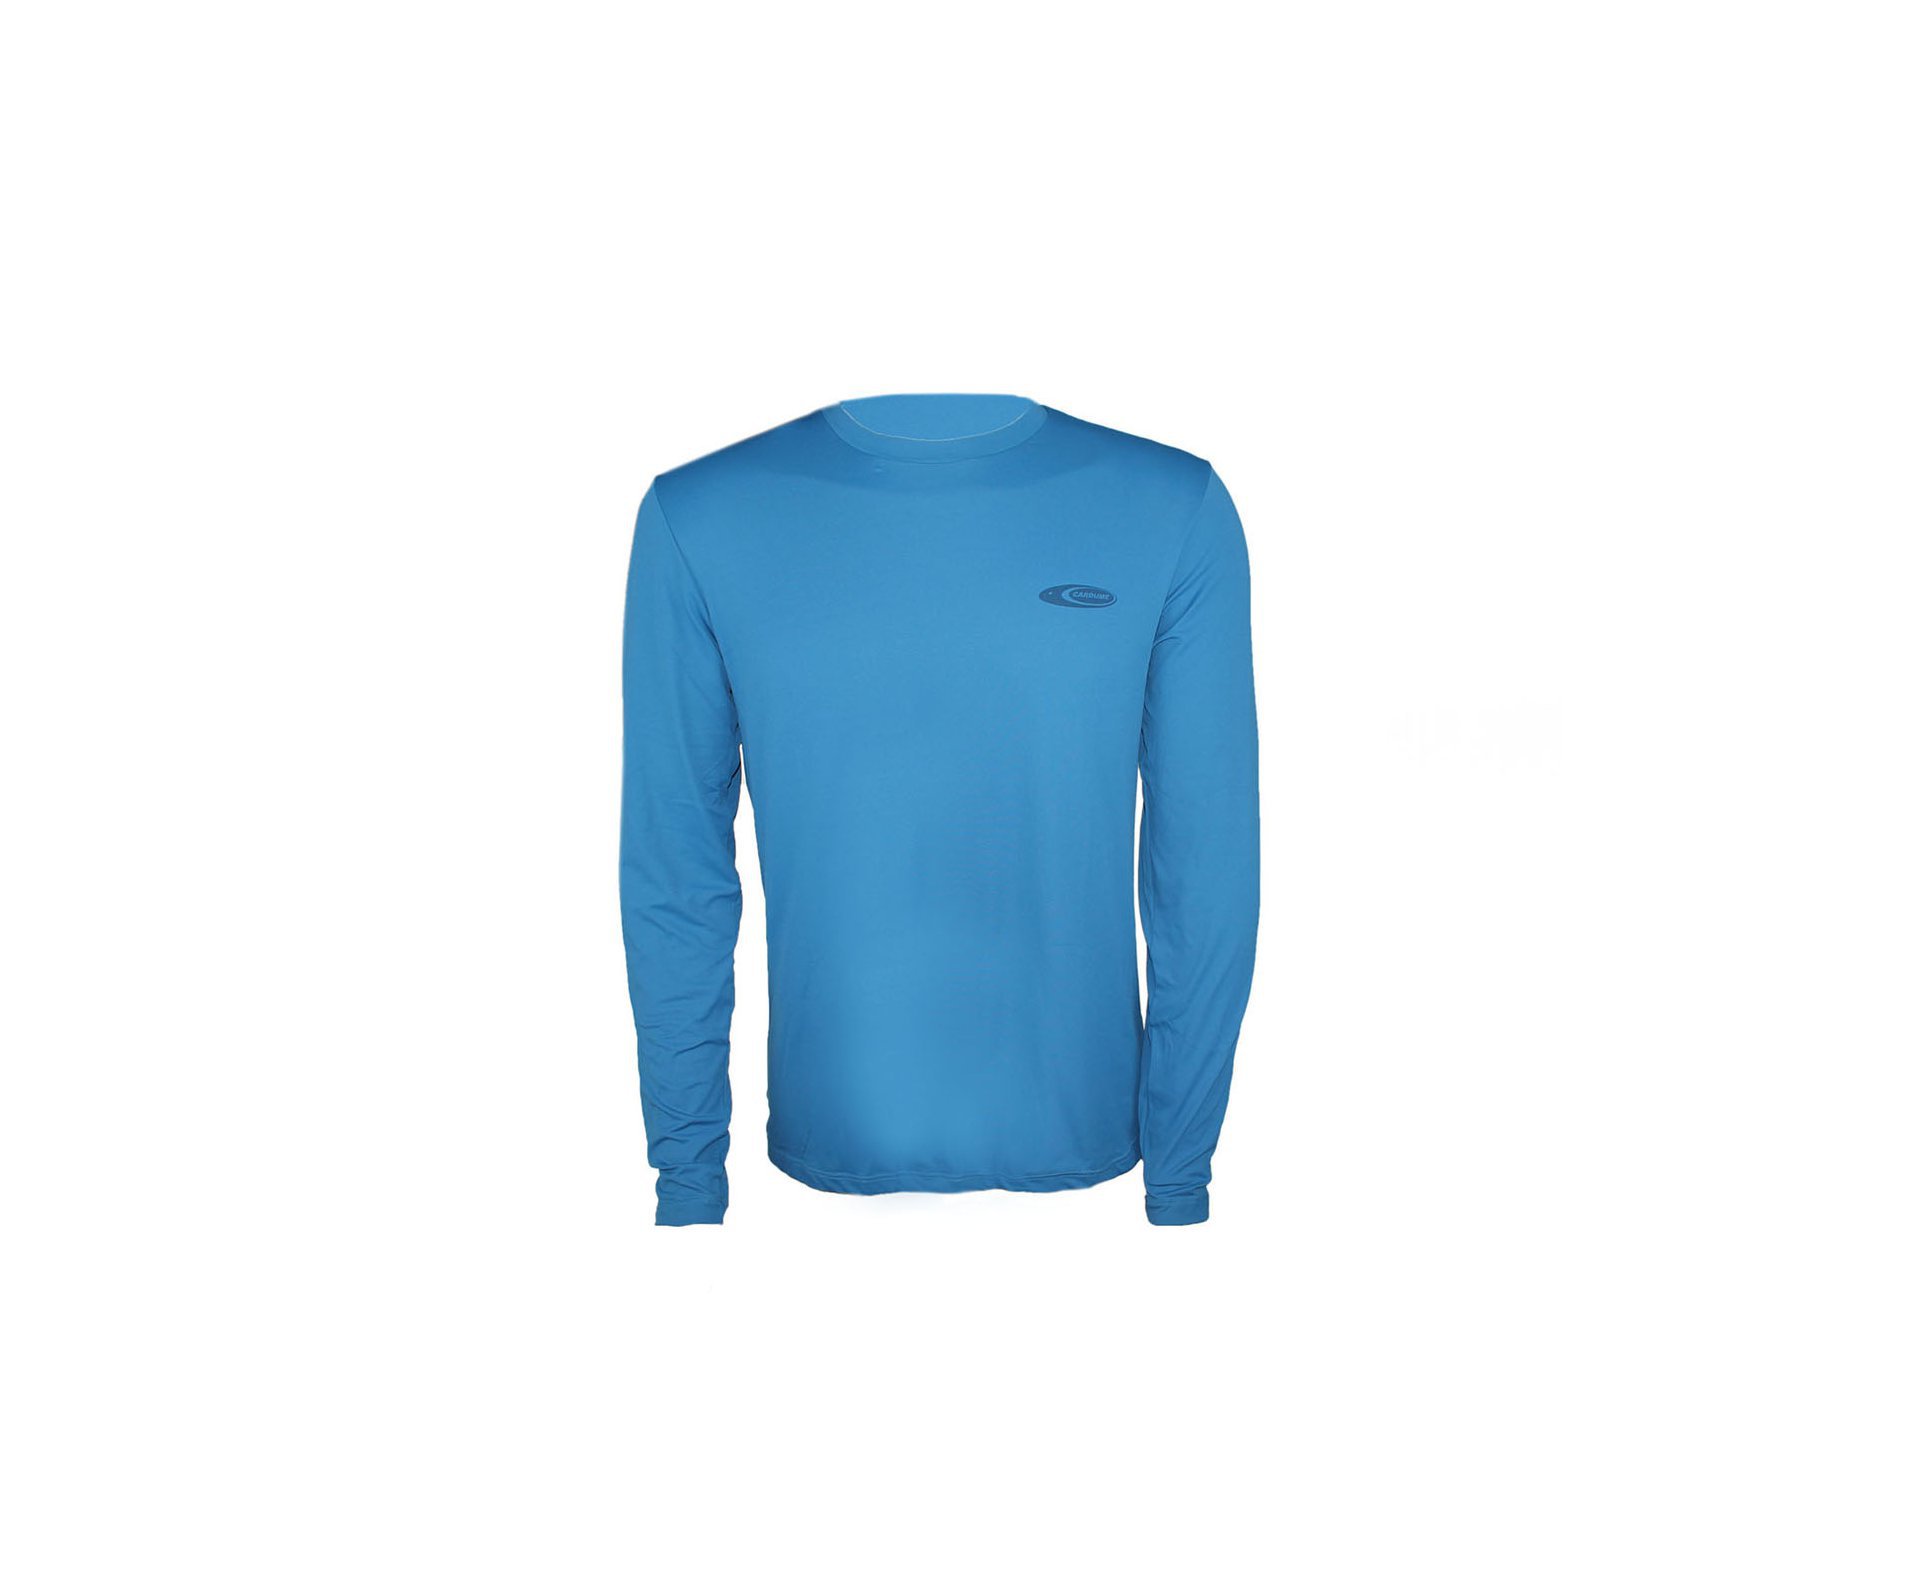 Camiseta Softline Azul - Proteção Uva/uvb 50+ Fps - Cardume - P